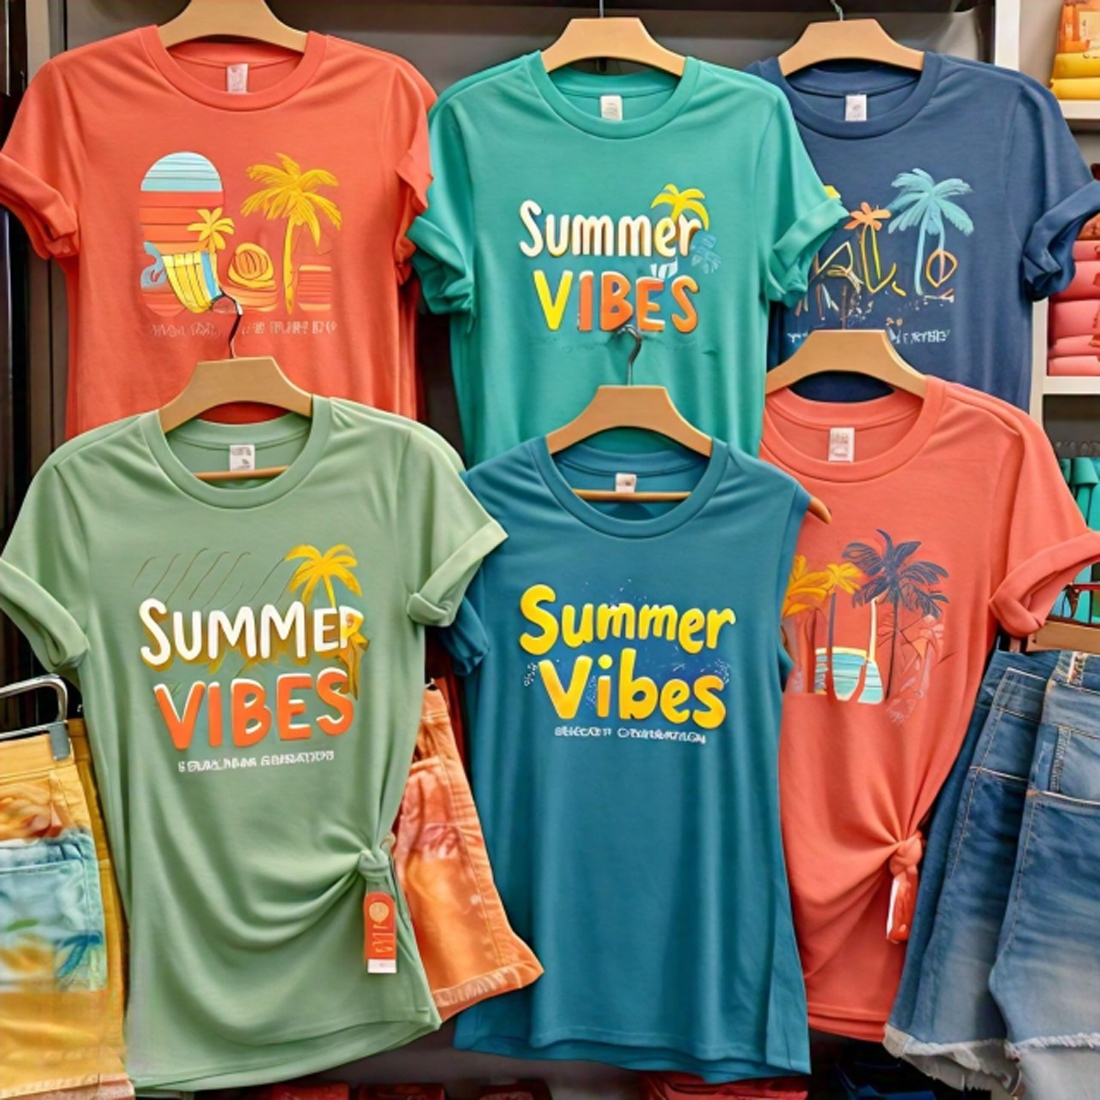 11 unique summer t-shirt designs preview image.